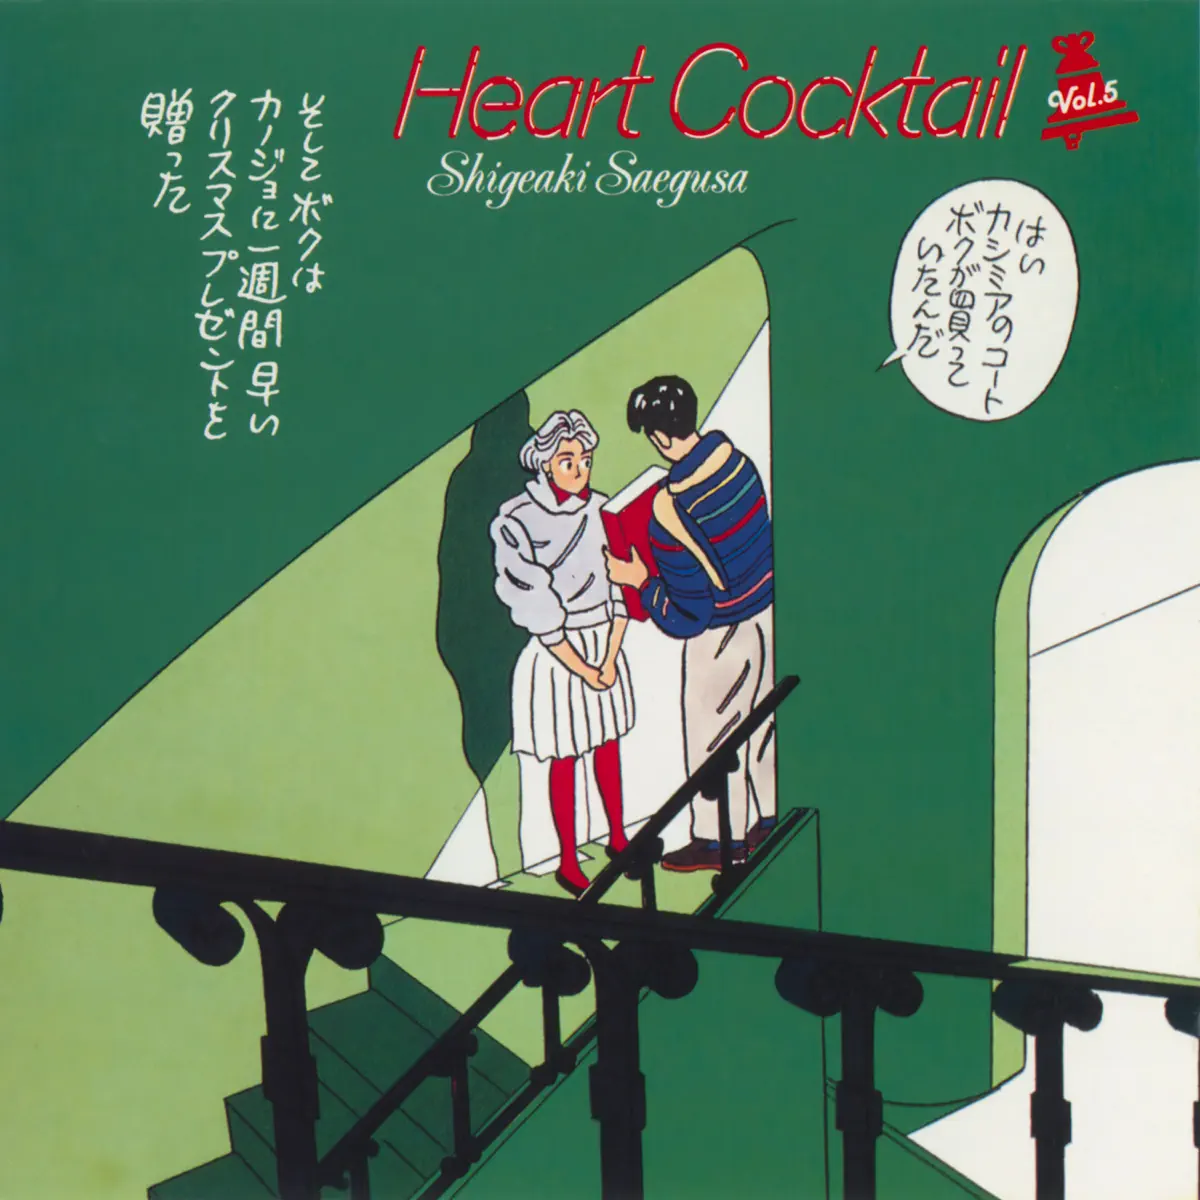 三枝成彰 - 心形雞尾酒 Heart Cocktail, Vol. 5 (1987) [iTunes Plus AAC M4A]-新房子